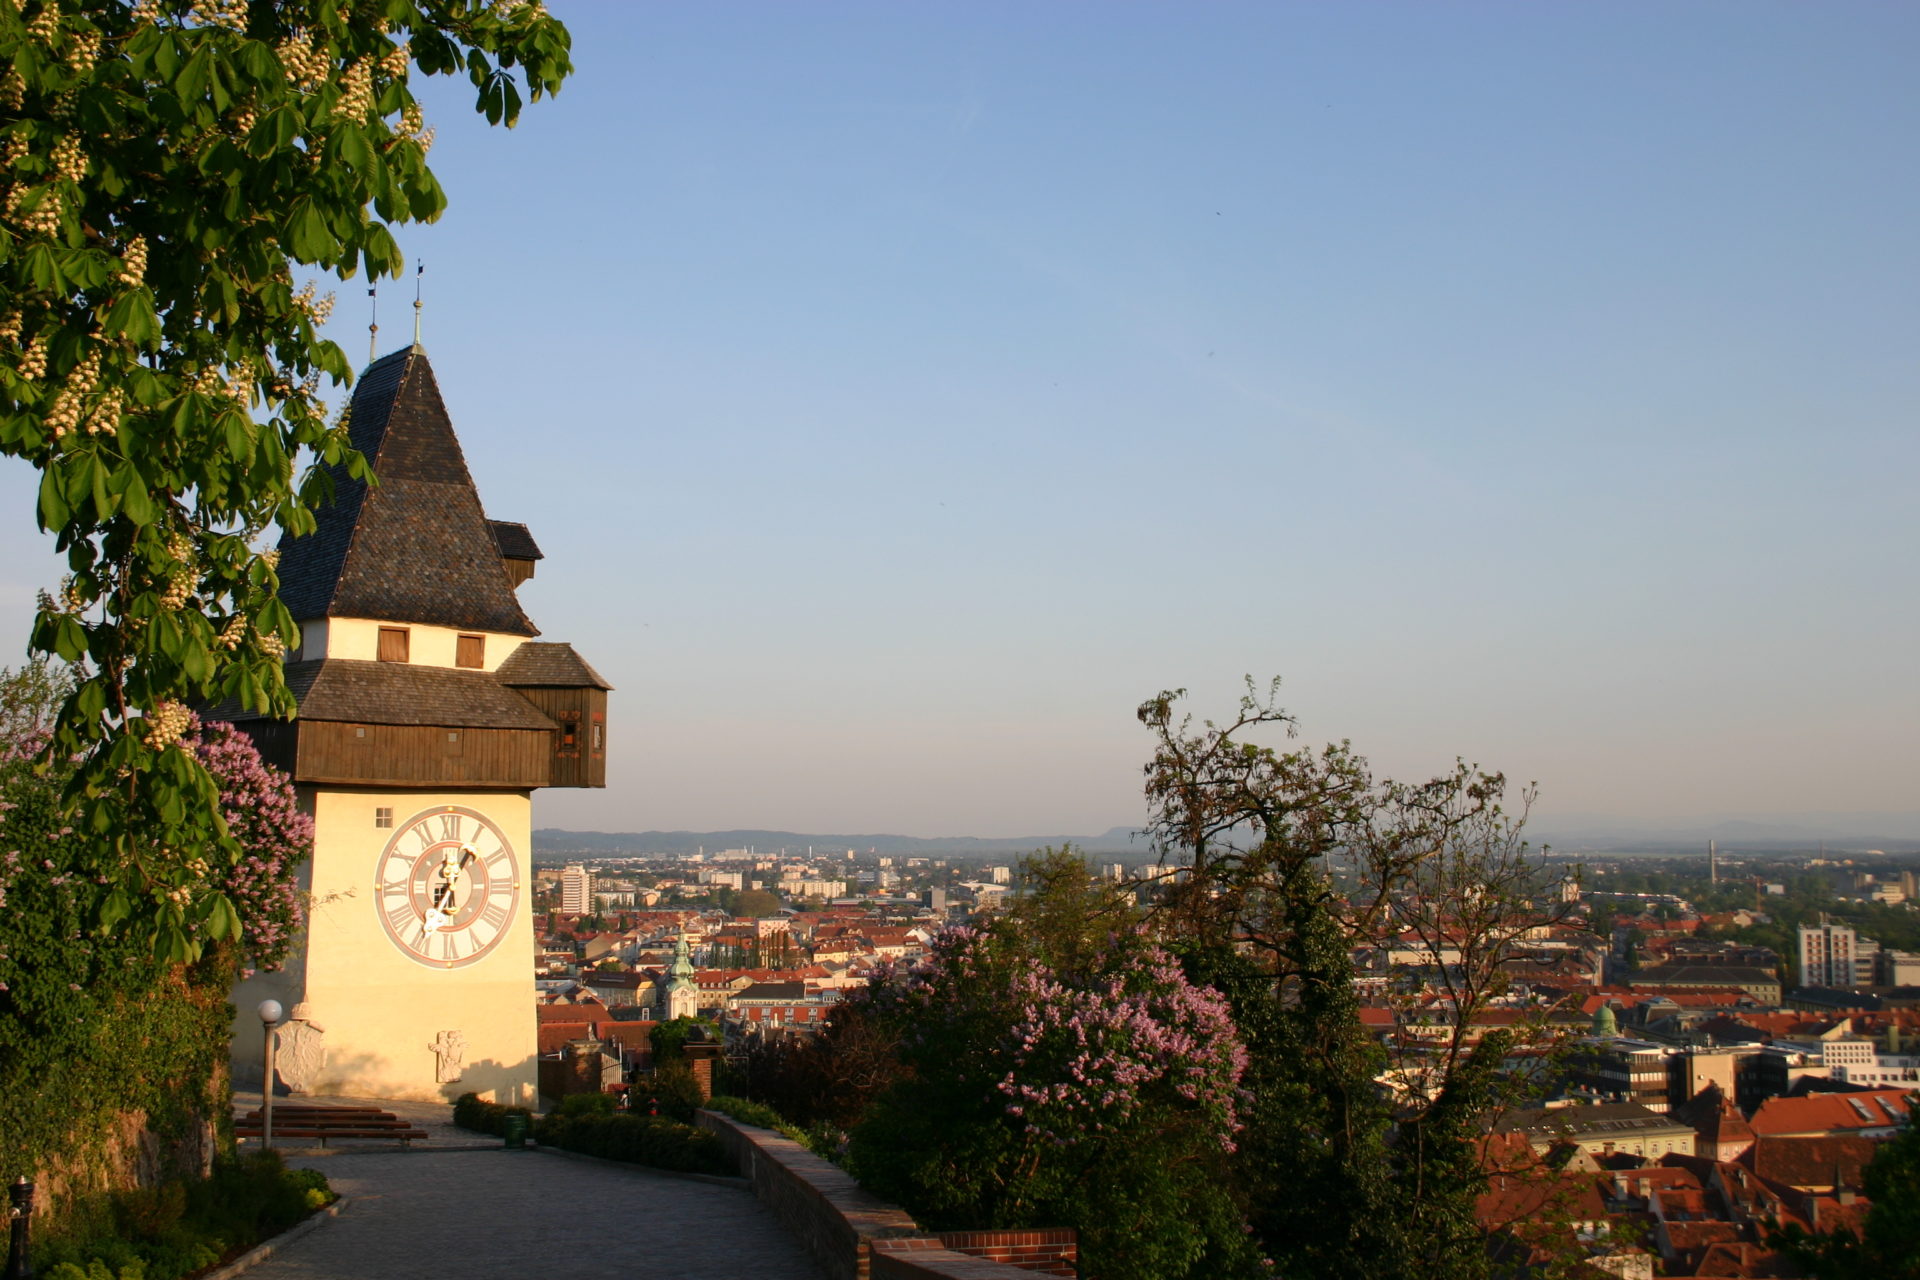 Das ist ein Bild vom Grazer Uhrturm, dem Wahrzeichen von Graz. Graz ist die Stadt in der der Kurs stattfindet.